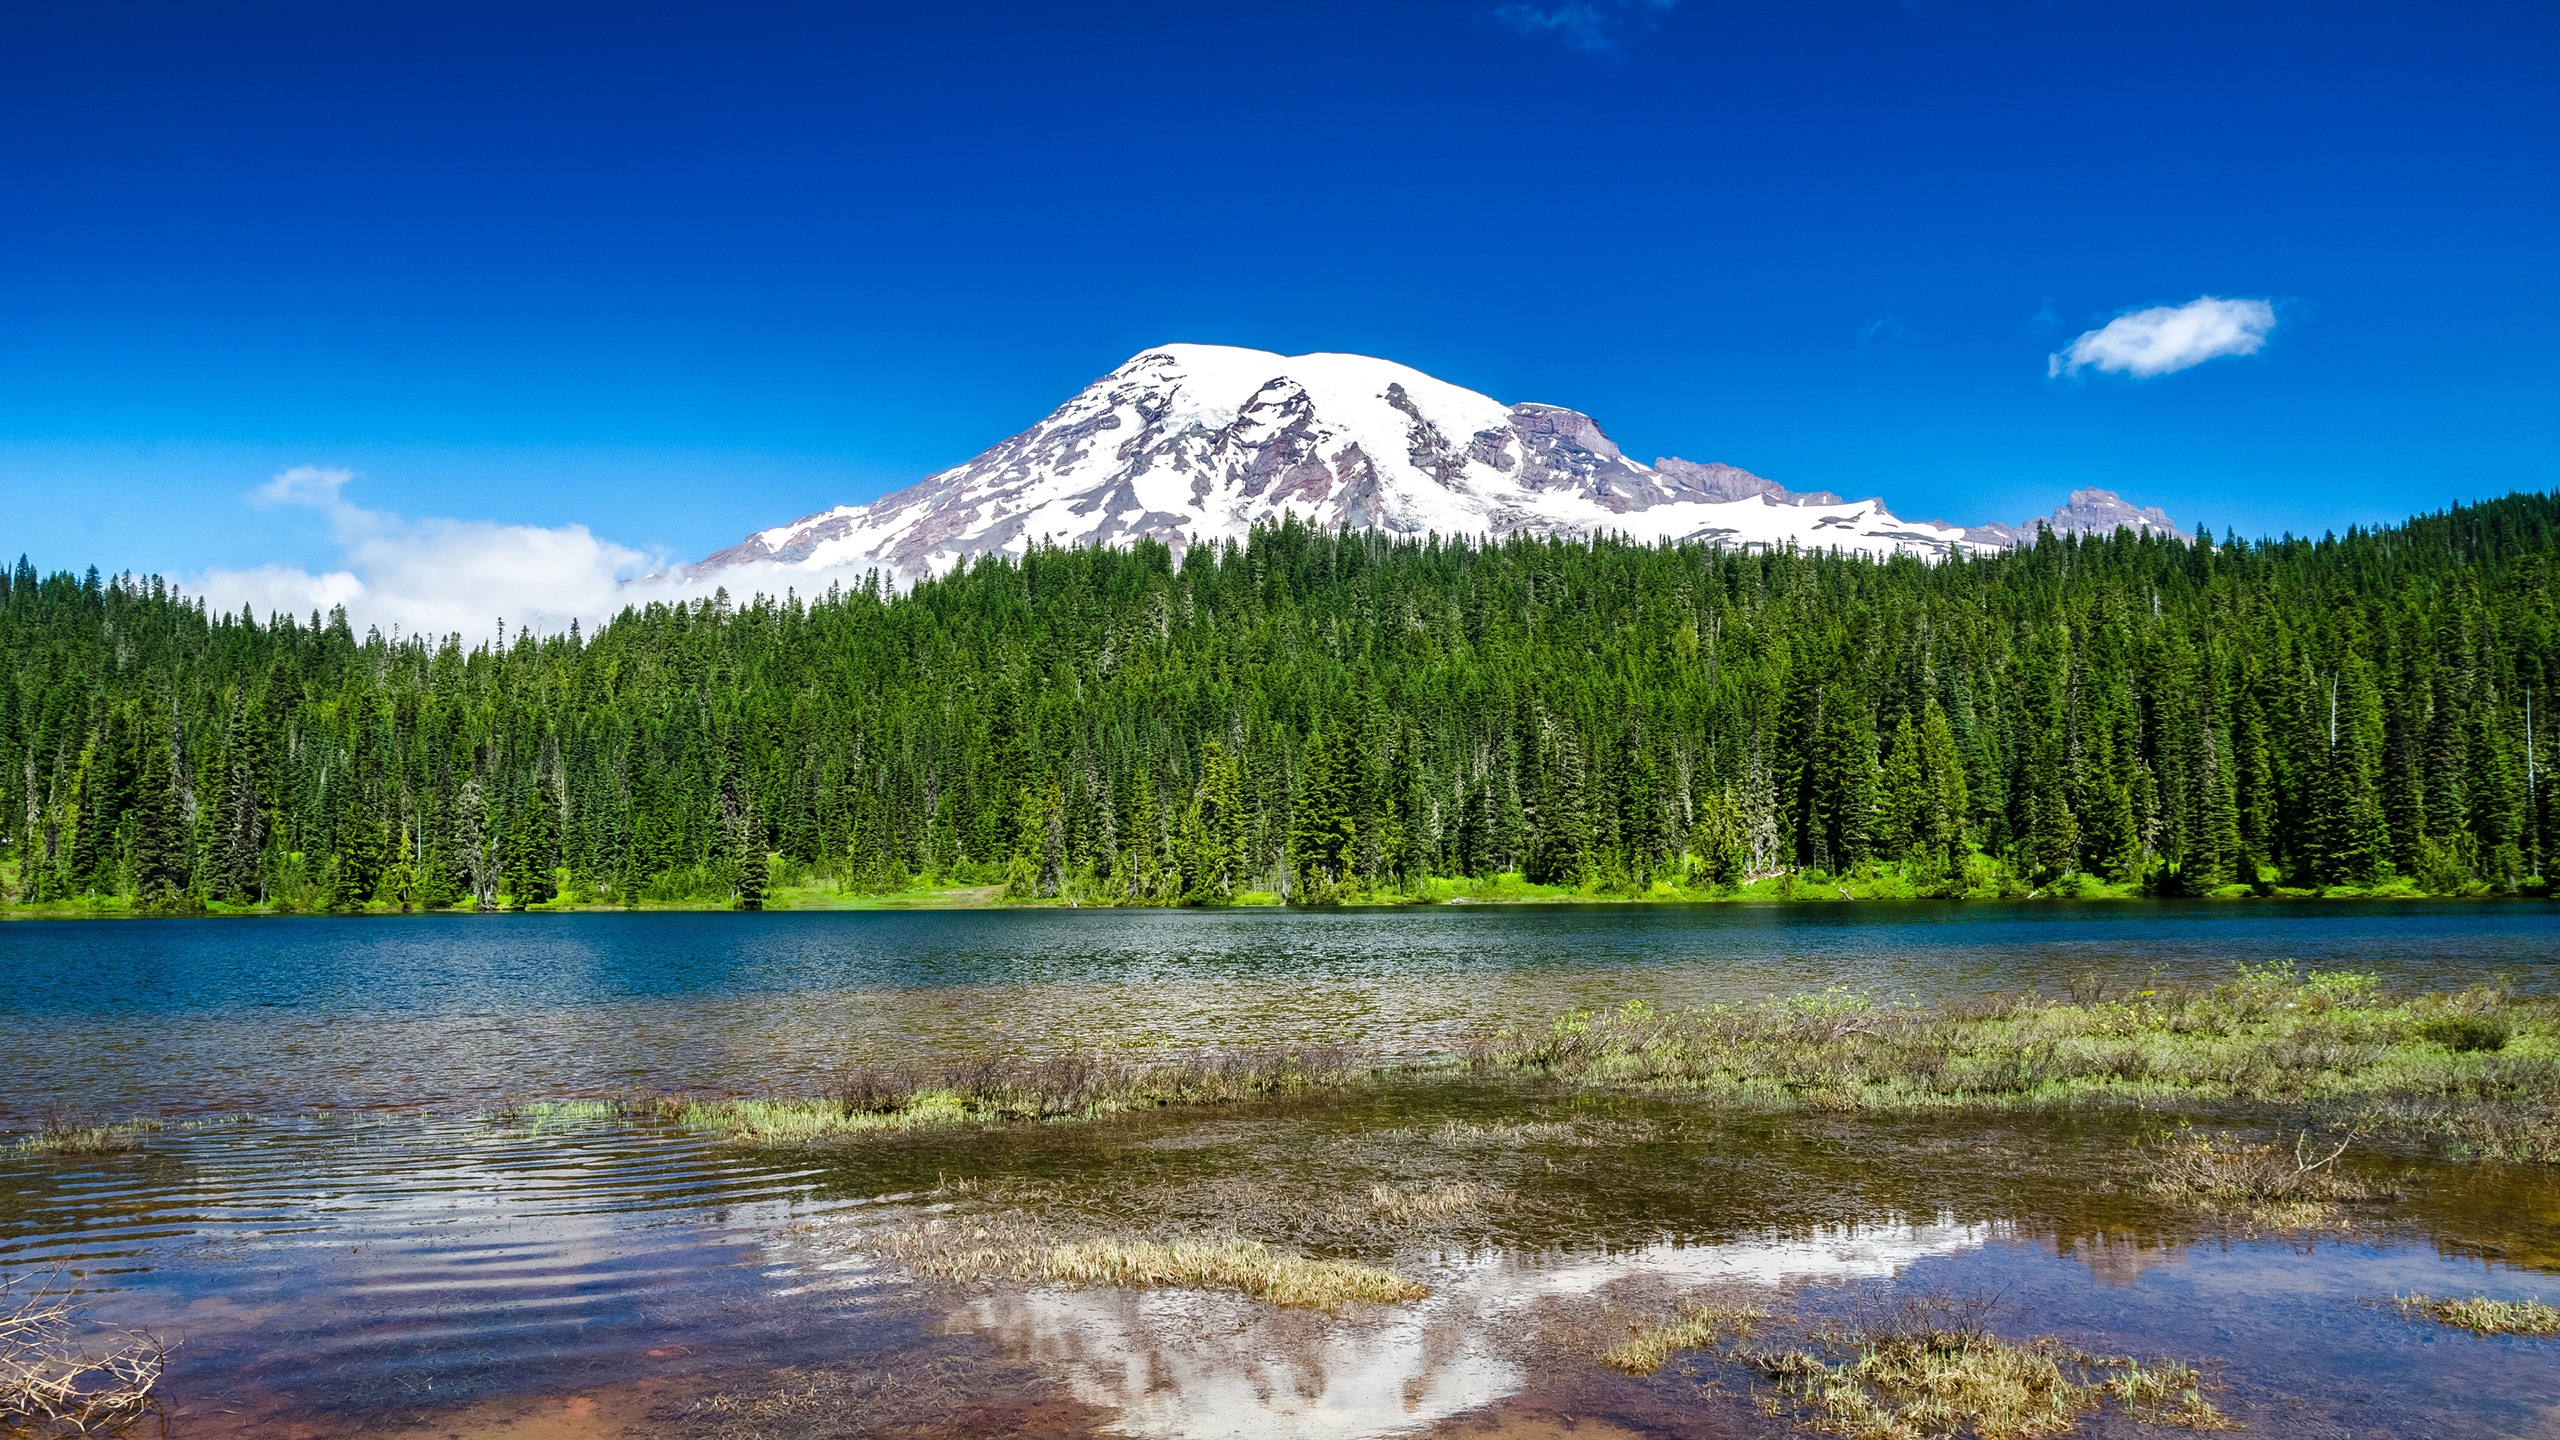 Mount Rainier National Park for 2560x1440 HDTV resolution